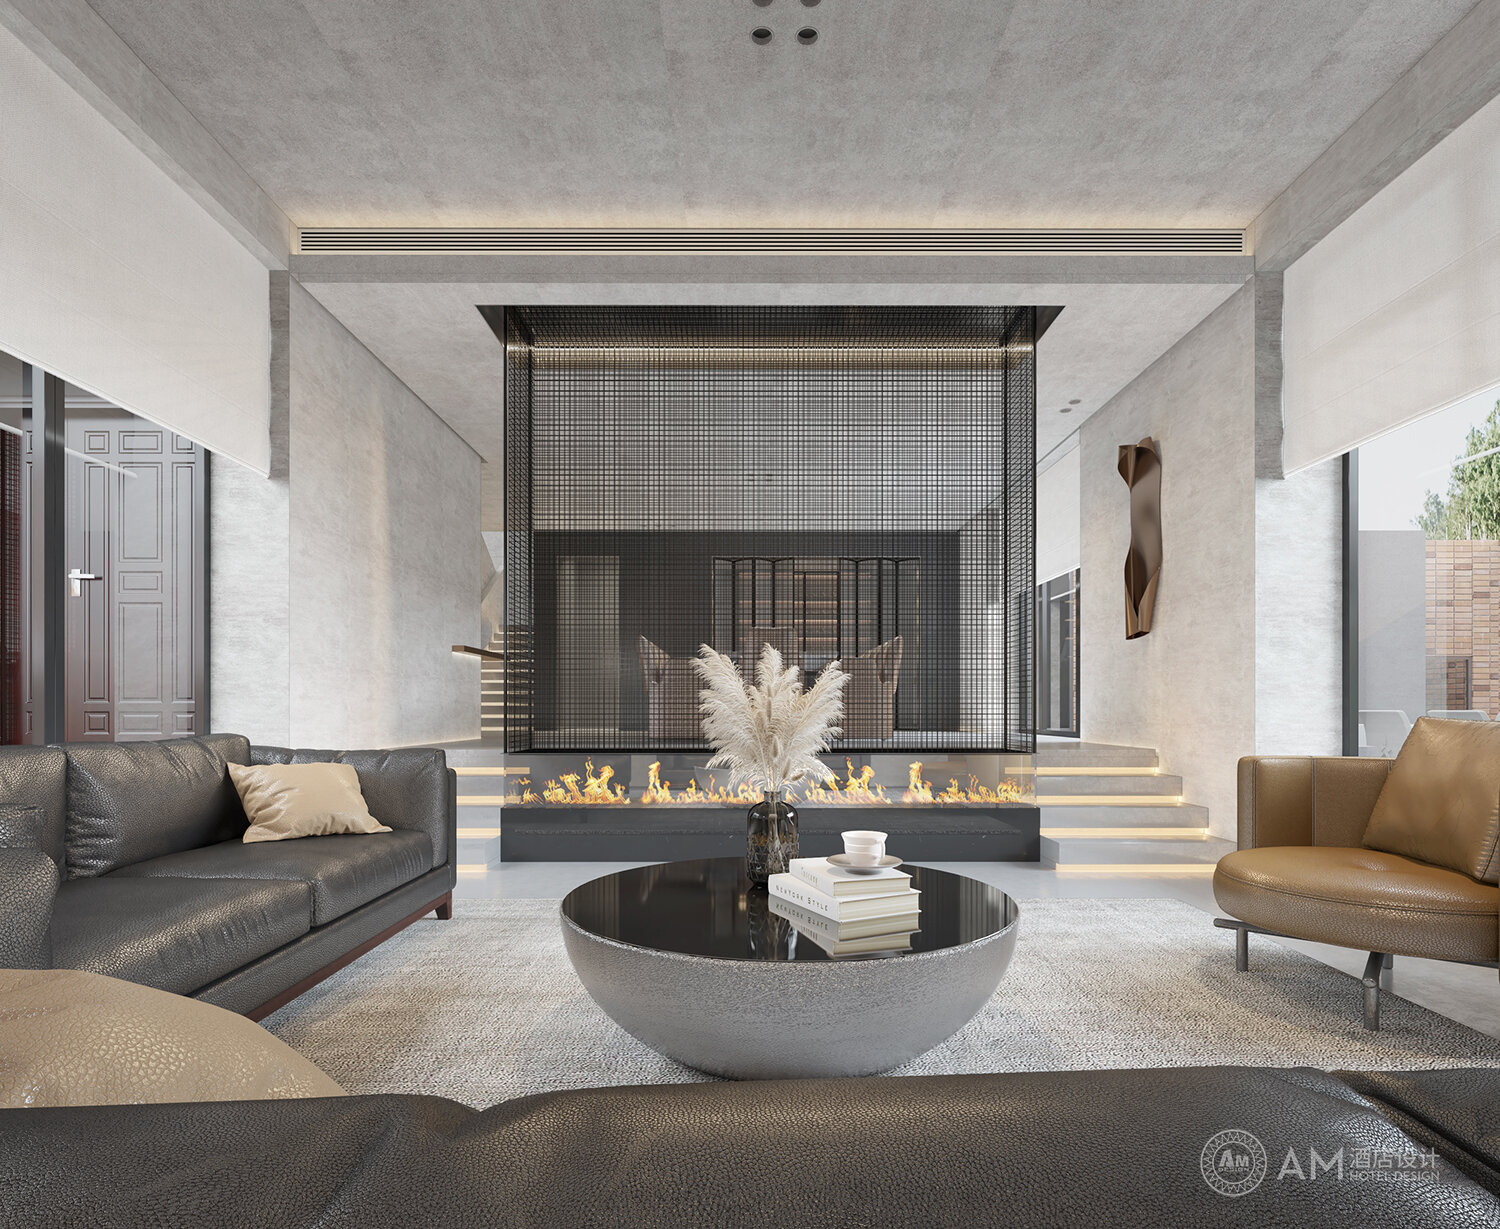 AM DESIGN | Living room design of Qianhouyuan B&B in Jizhou District, Tianjin